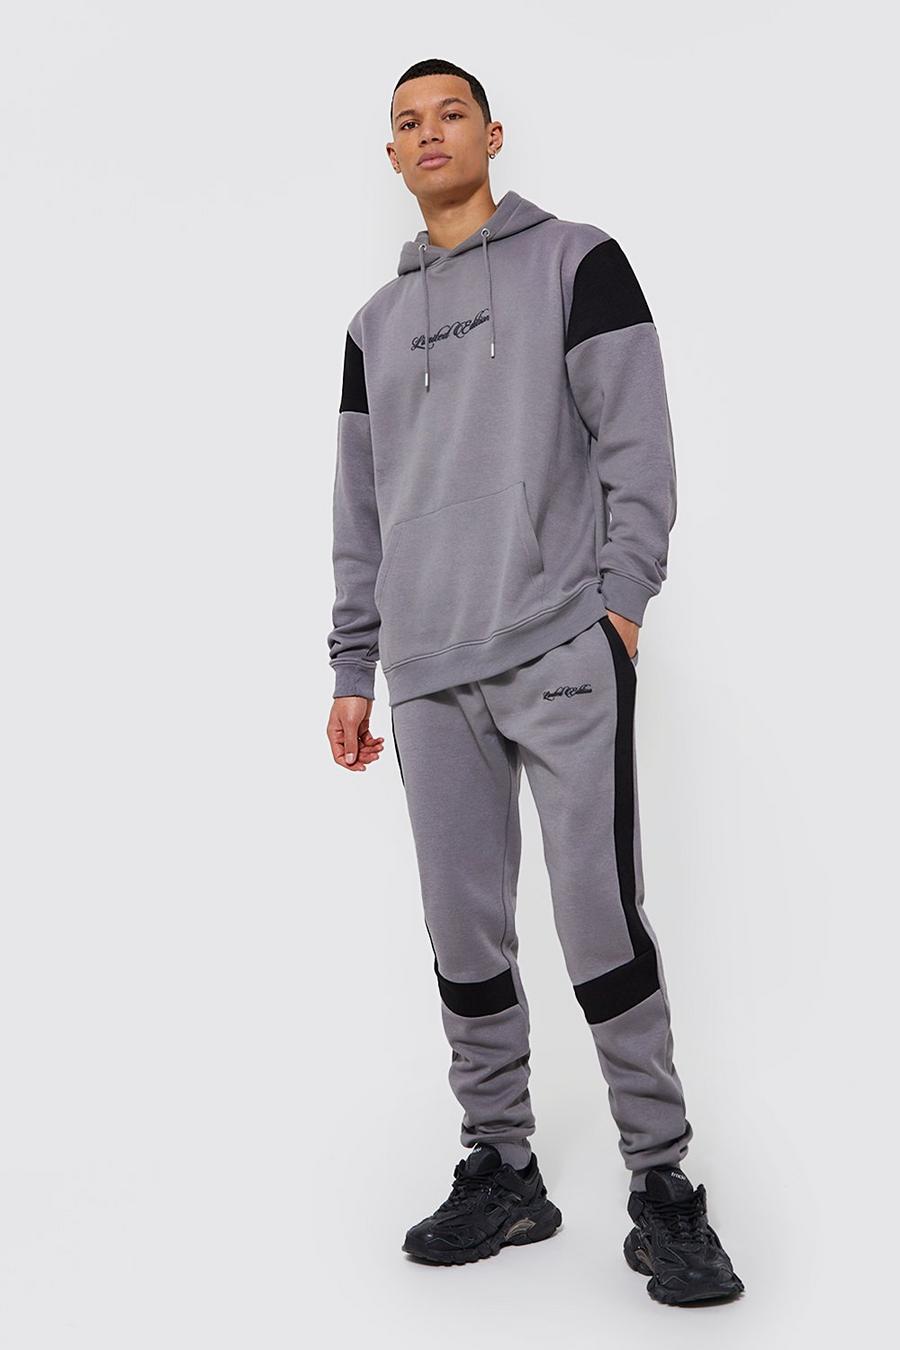 Chándal Tall Limited Edition con colores en bloque, Grey grigio